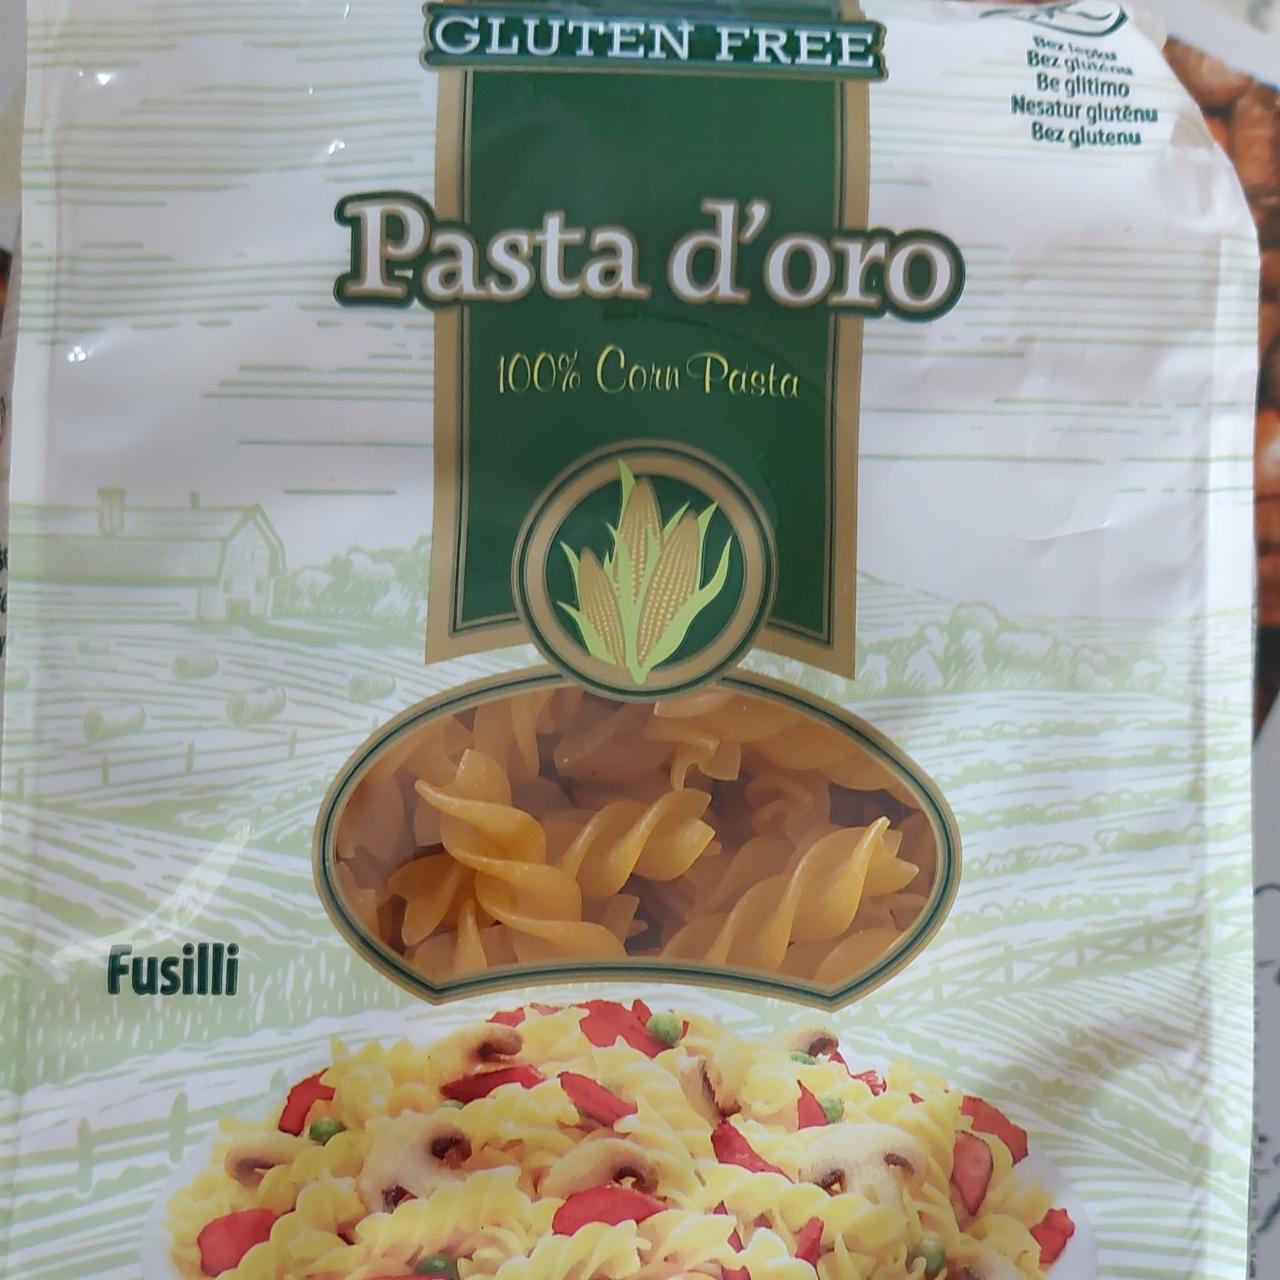 Fotografie - Pasta d'oro Fusilli gluten free